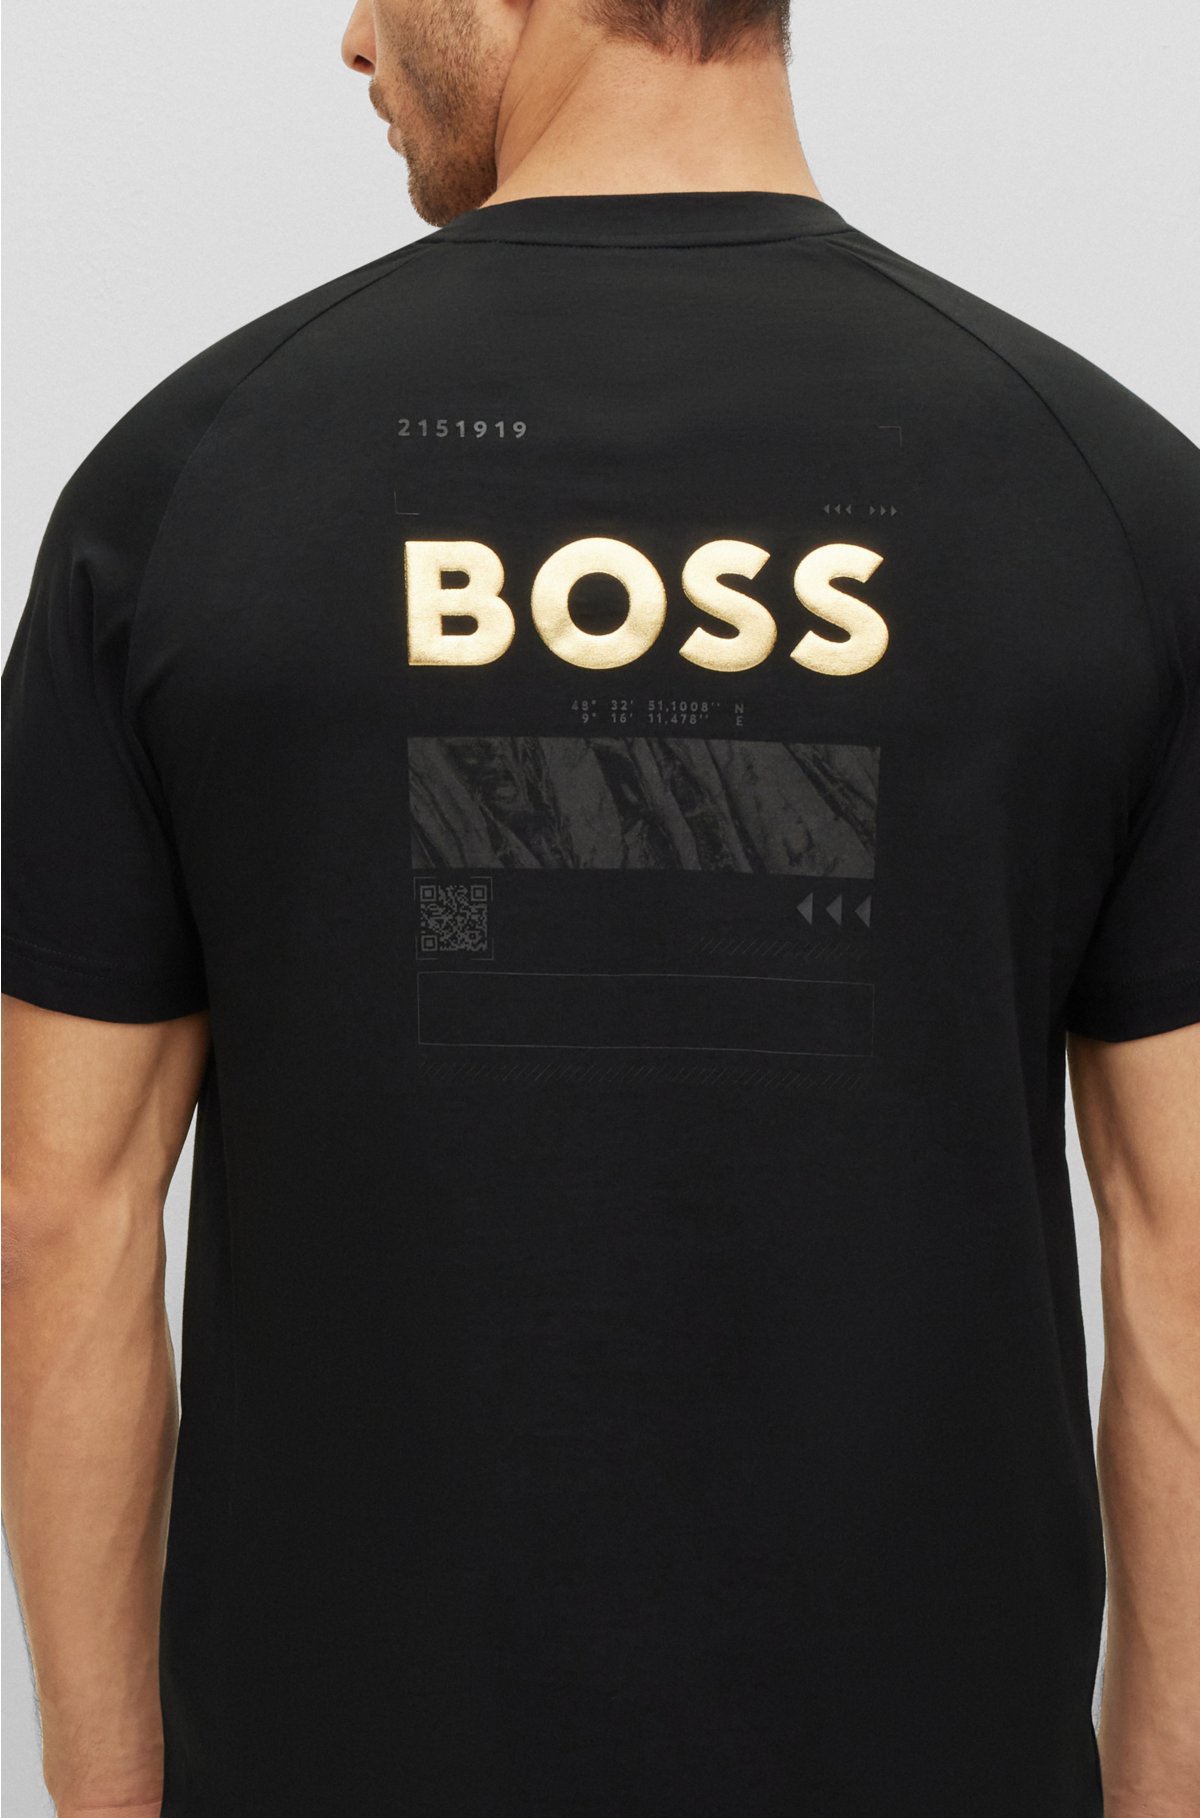 BOSS - T-shirt with artwork